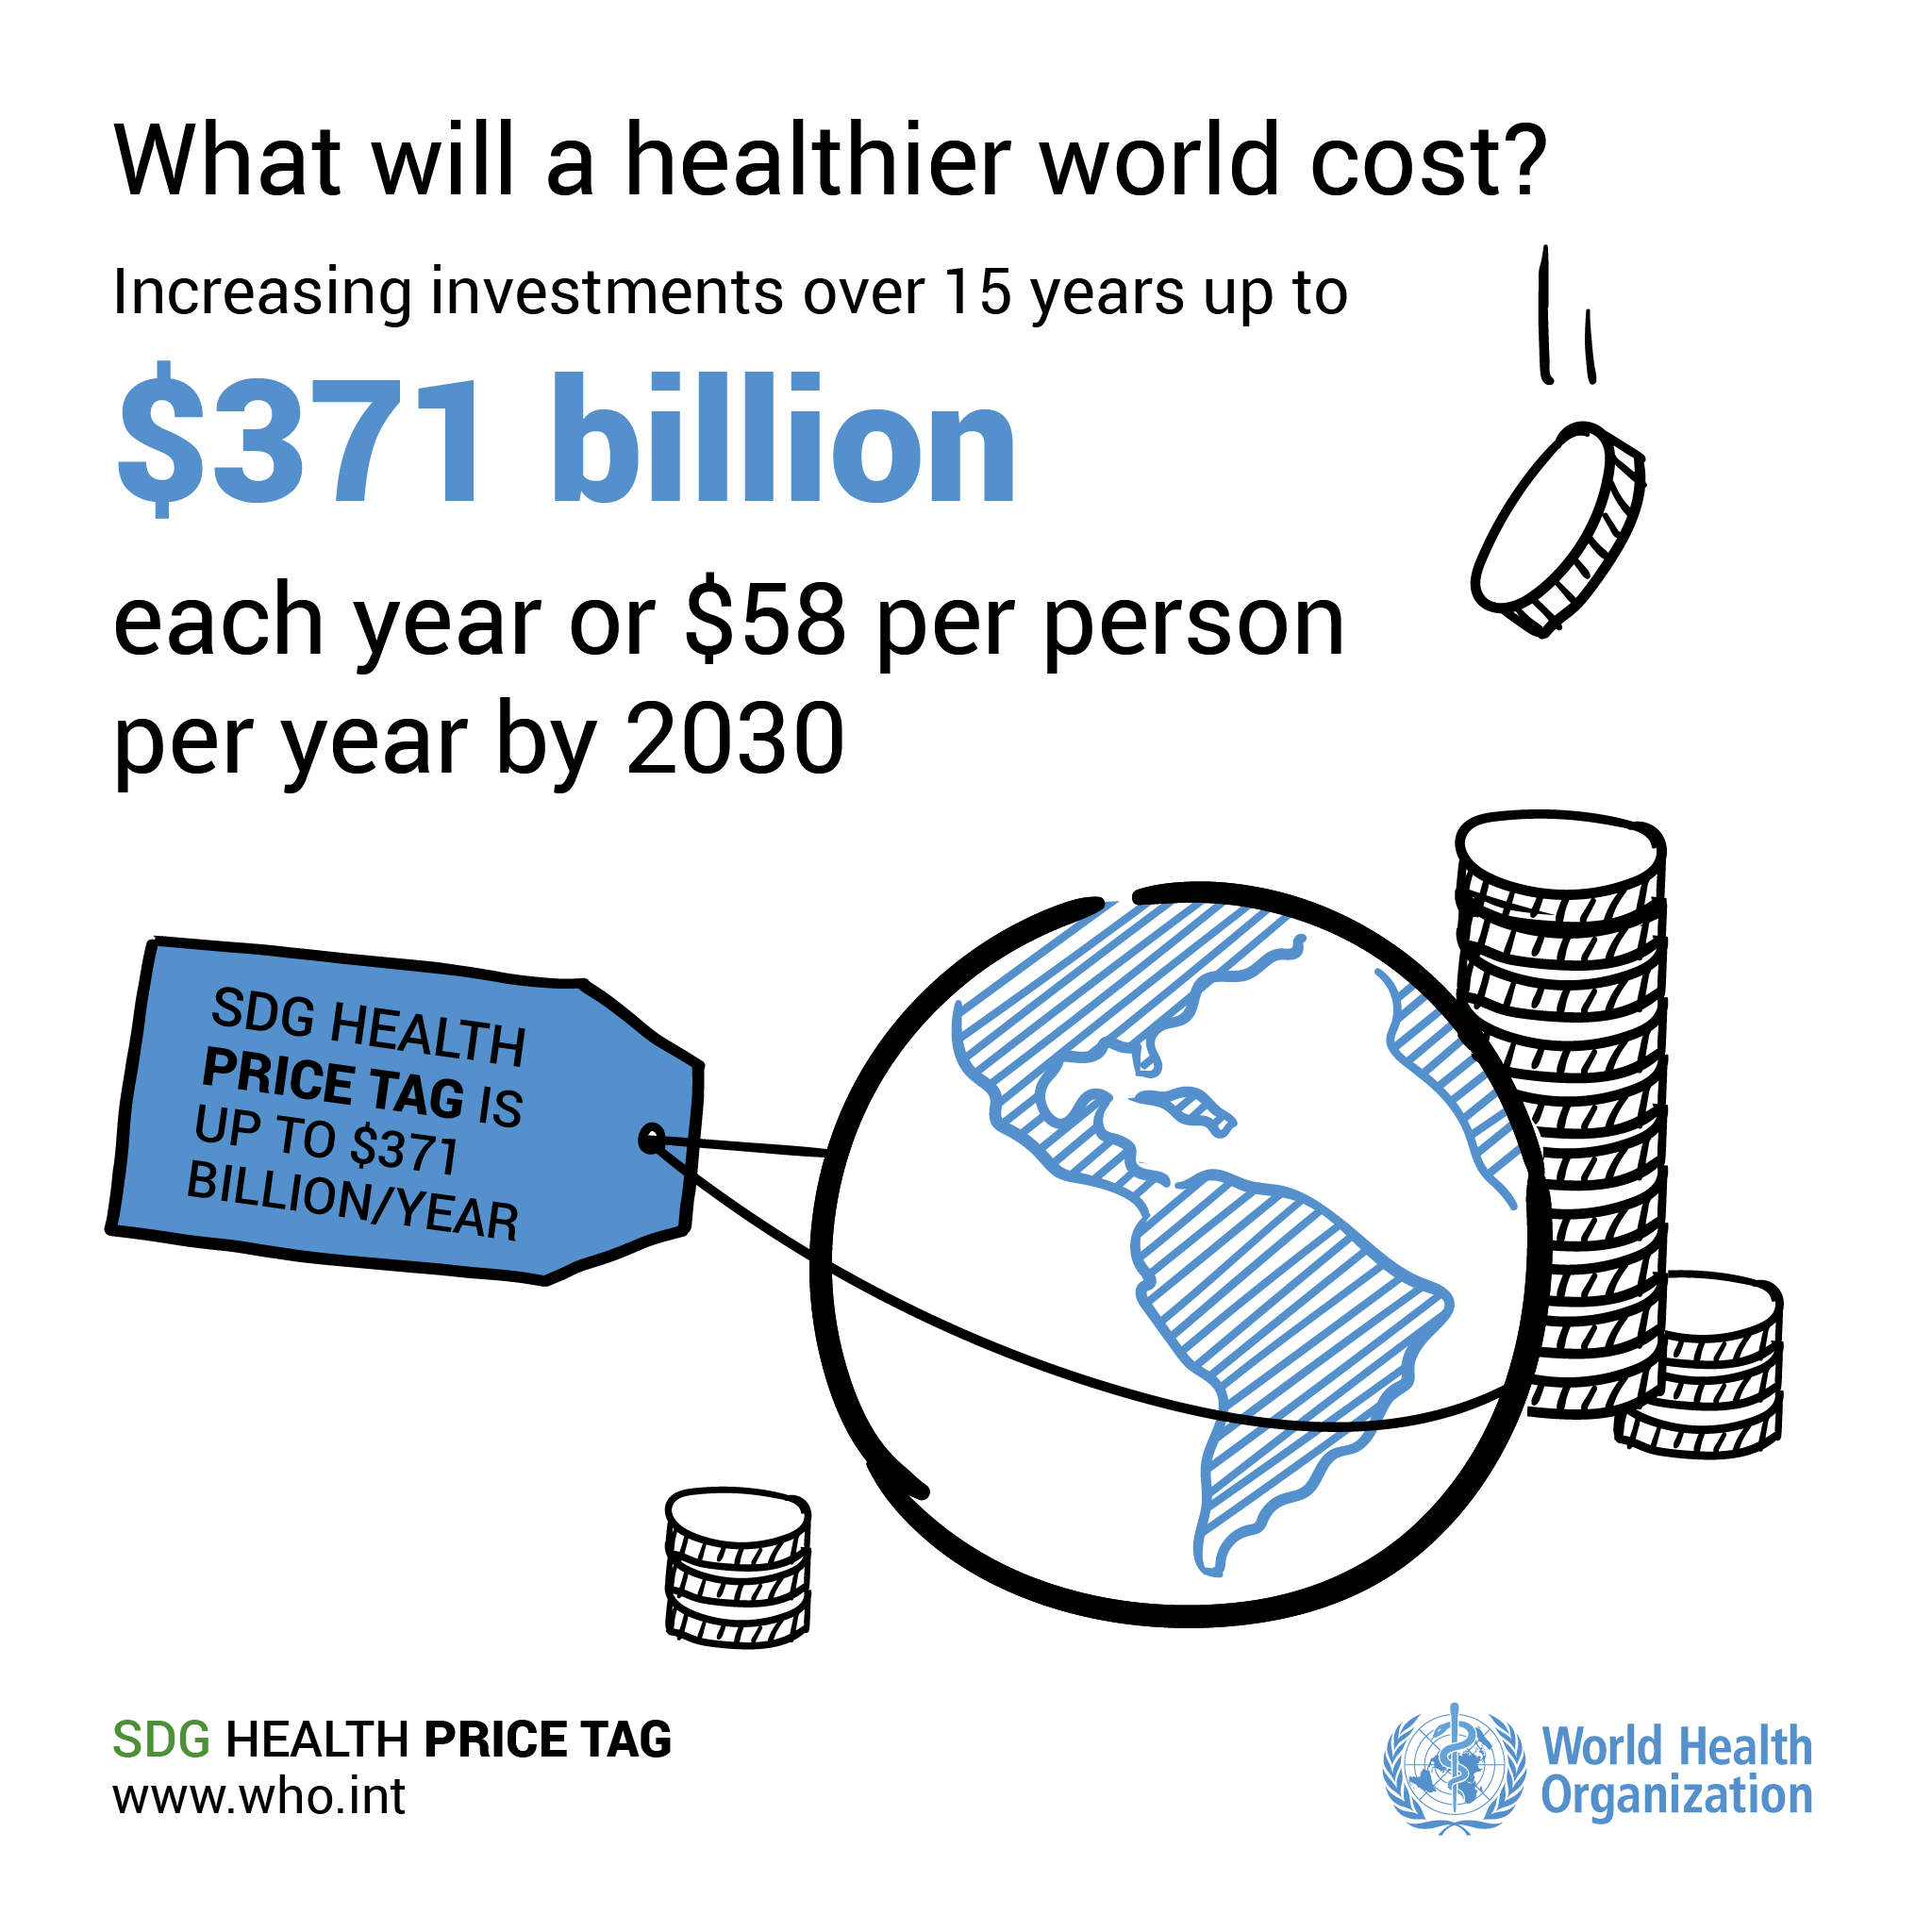 Ценник на здоровье SDG. У нас есть цифры. Как мы разделим счет?